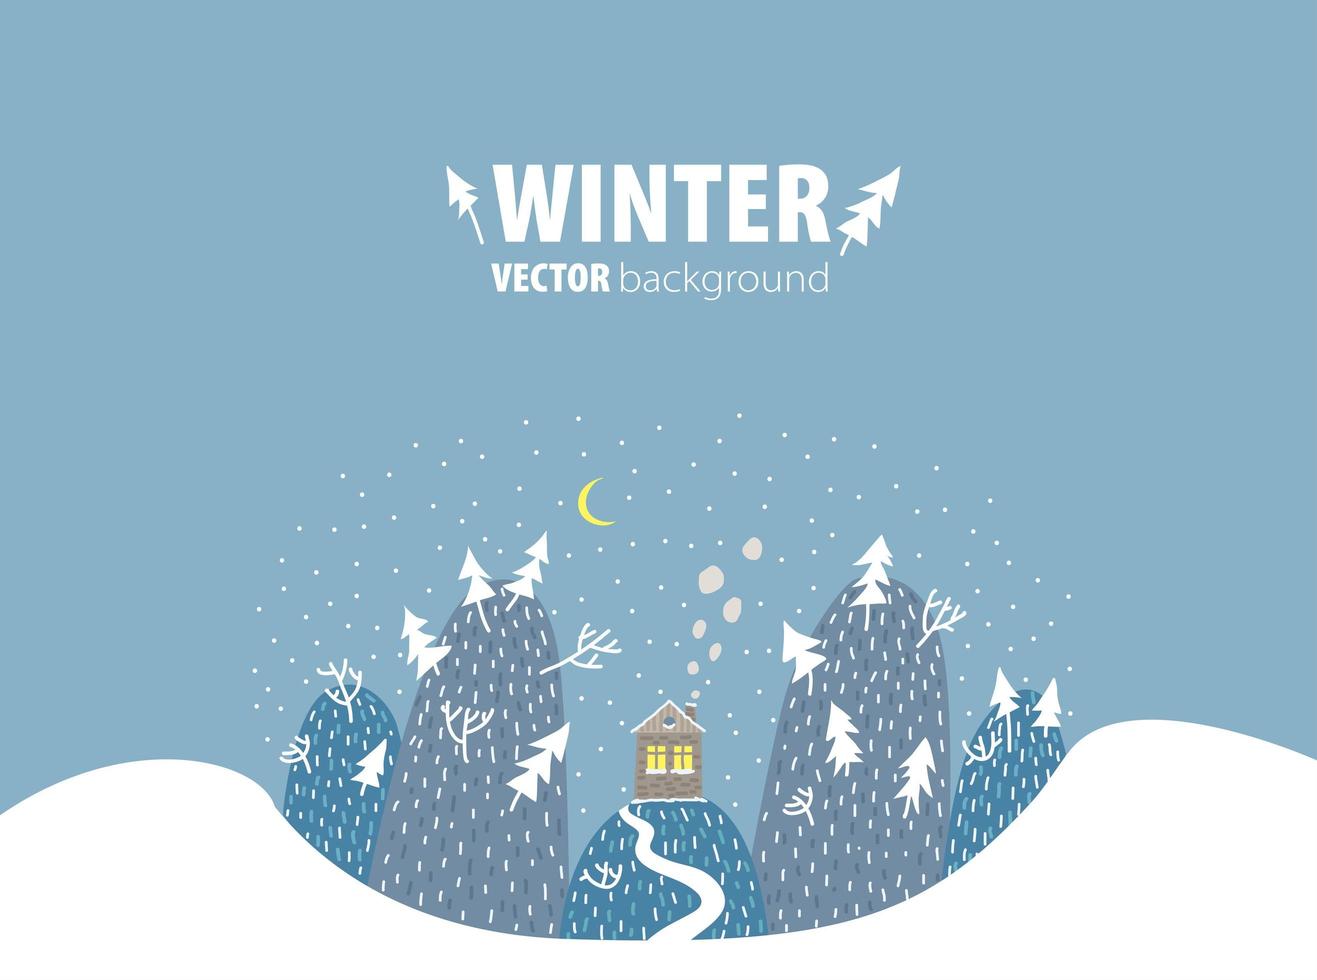 bakgrund för vinterdesign med plats för text. bergslandskap i vintertid med ett litet hus och en väg, snön faller och månen skiner. vektor hand drunknar tecknad illustration